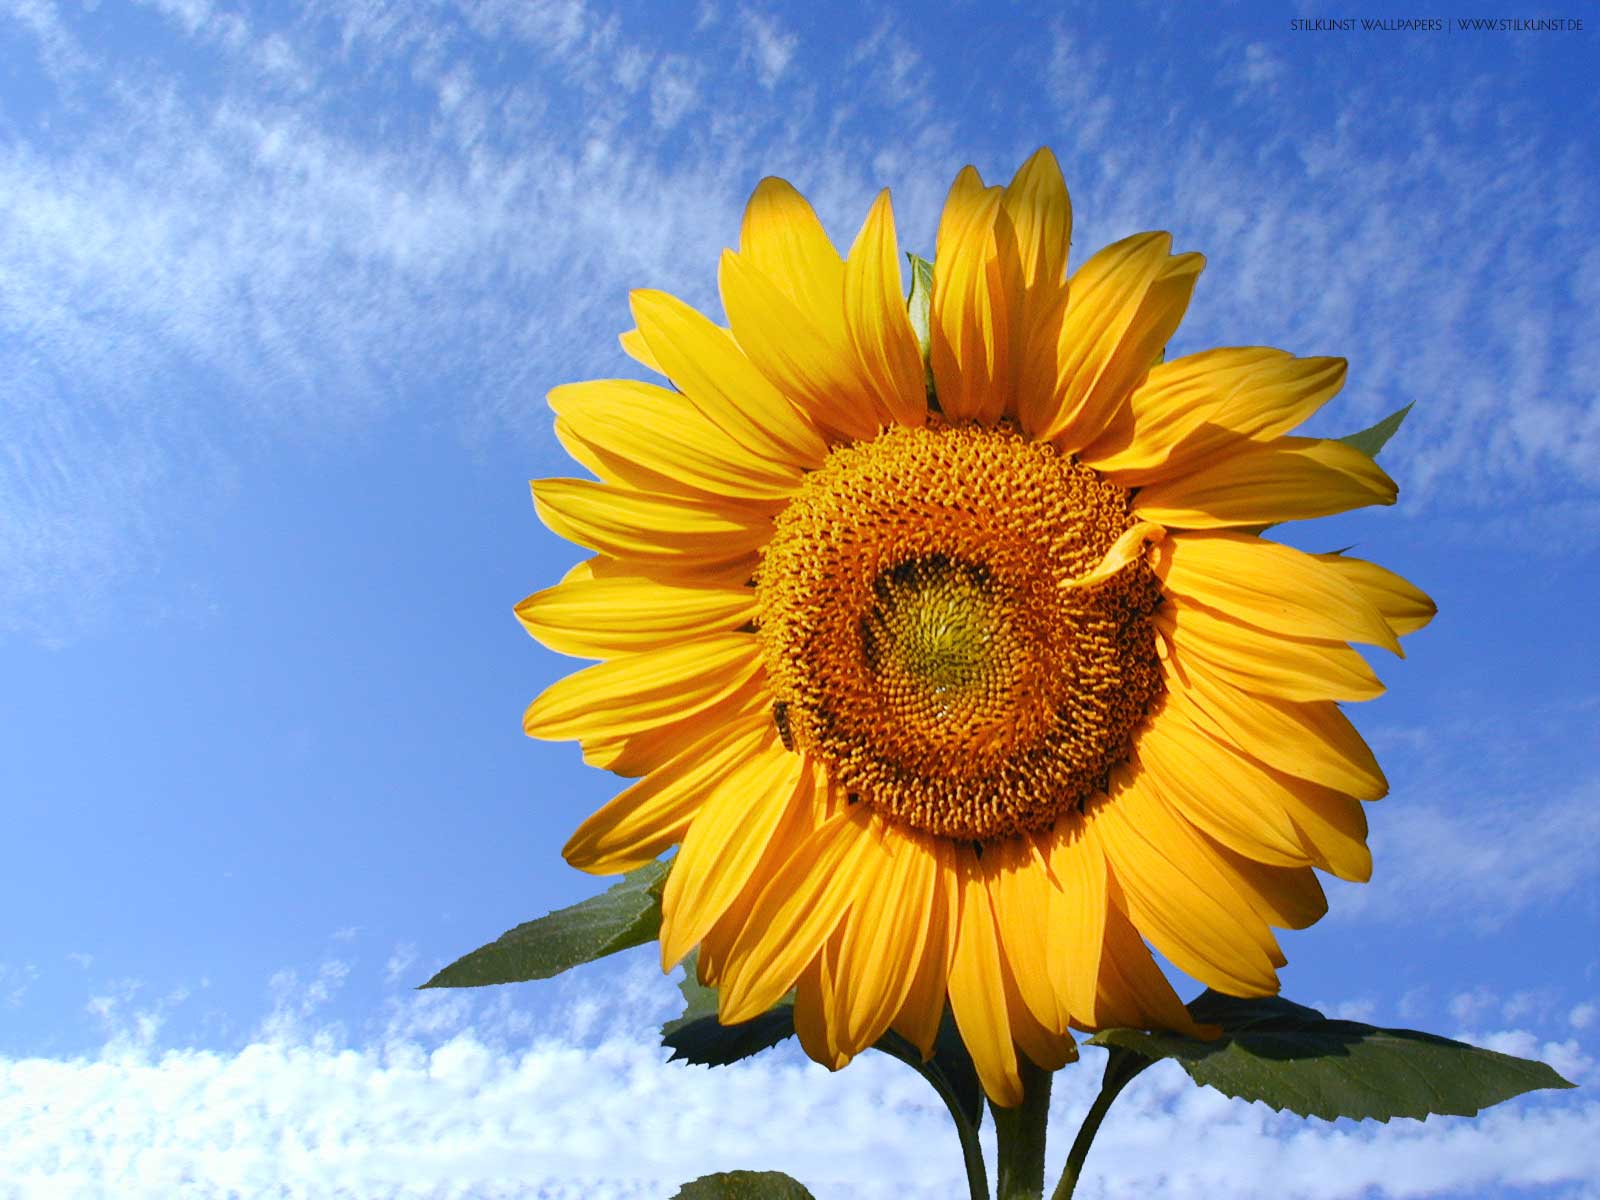 Sonnenblume | 1600 x 1200px | Bild: ©by Sabrina | Reiner | www.stilkunst.de | Lizenz: CC BY-SA